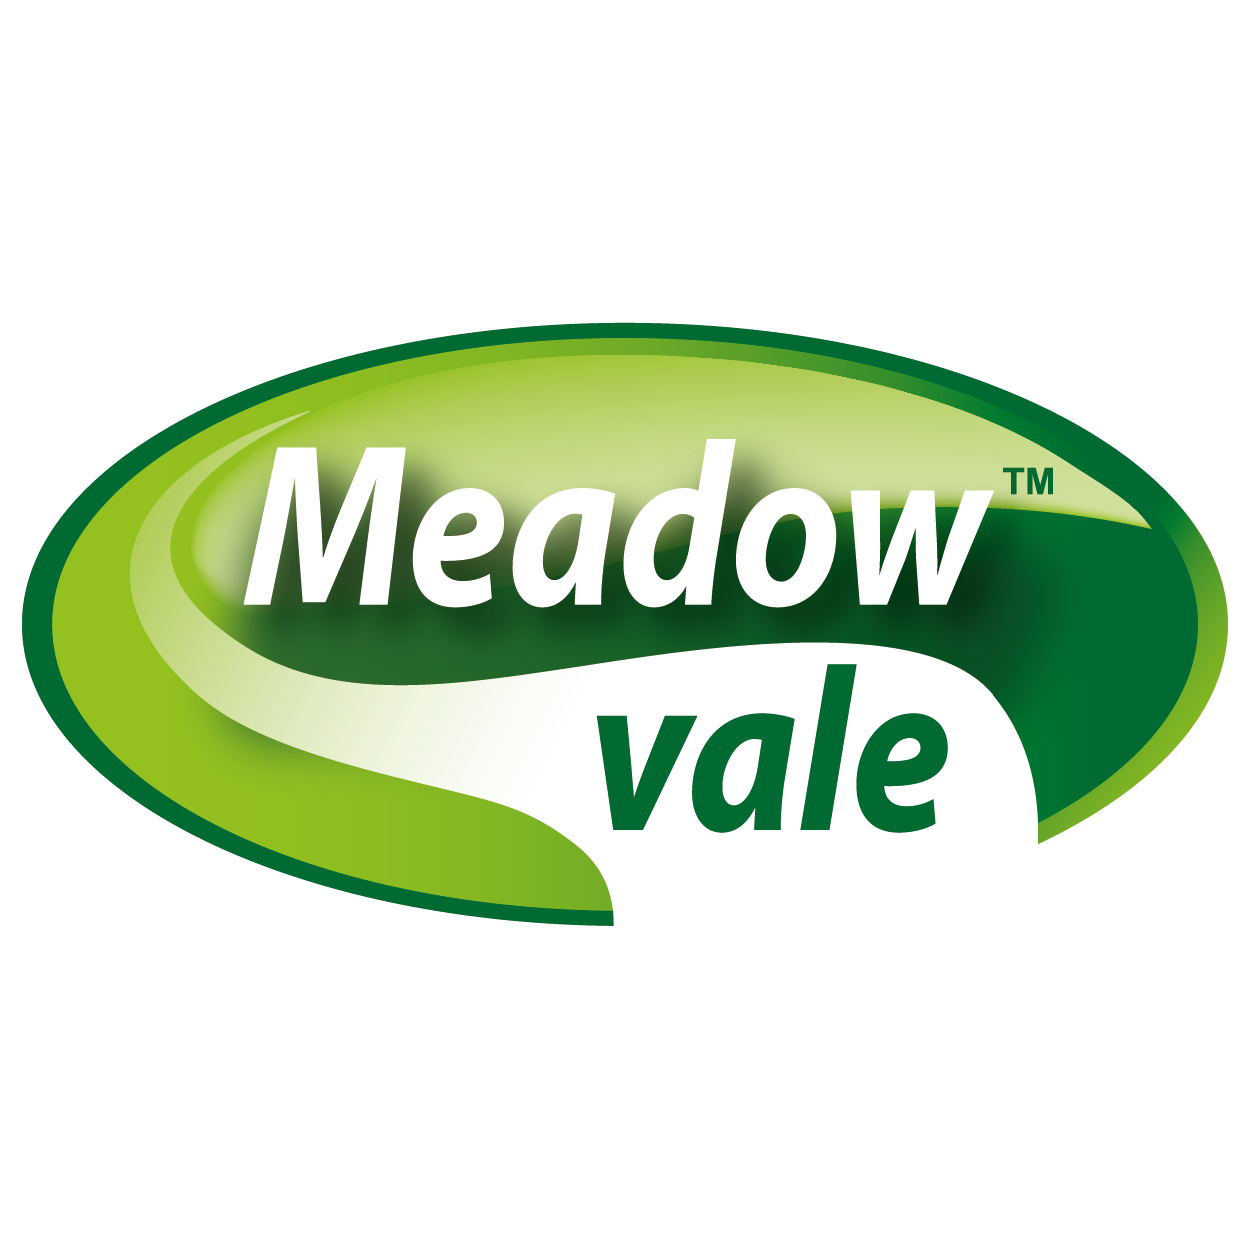 Meadowvale foods